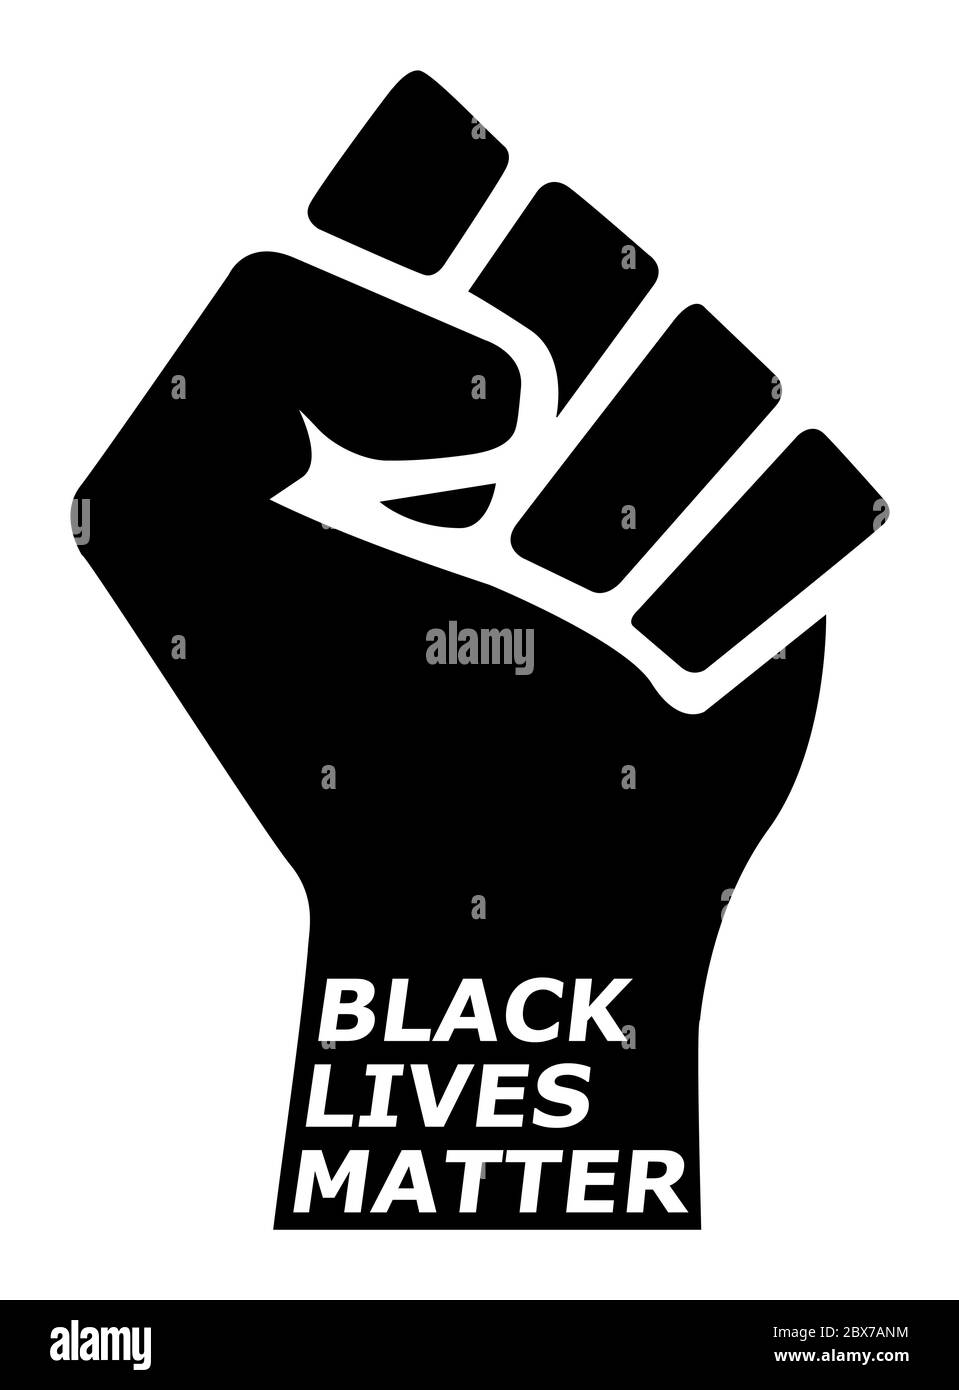 Las vidas negras importan con el puño orgulloso, símbolo de orgullo de la historia negra, prejuicio y discriminación activismo ilustración de la bandera, afroamericano, gente de Foto de stock